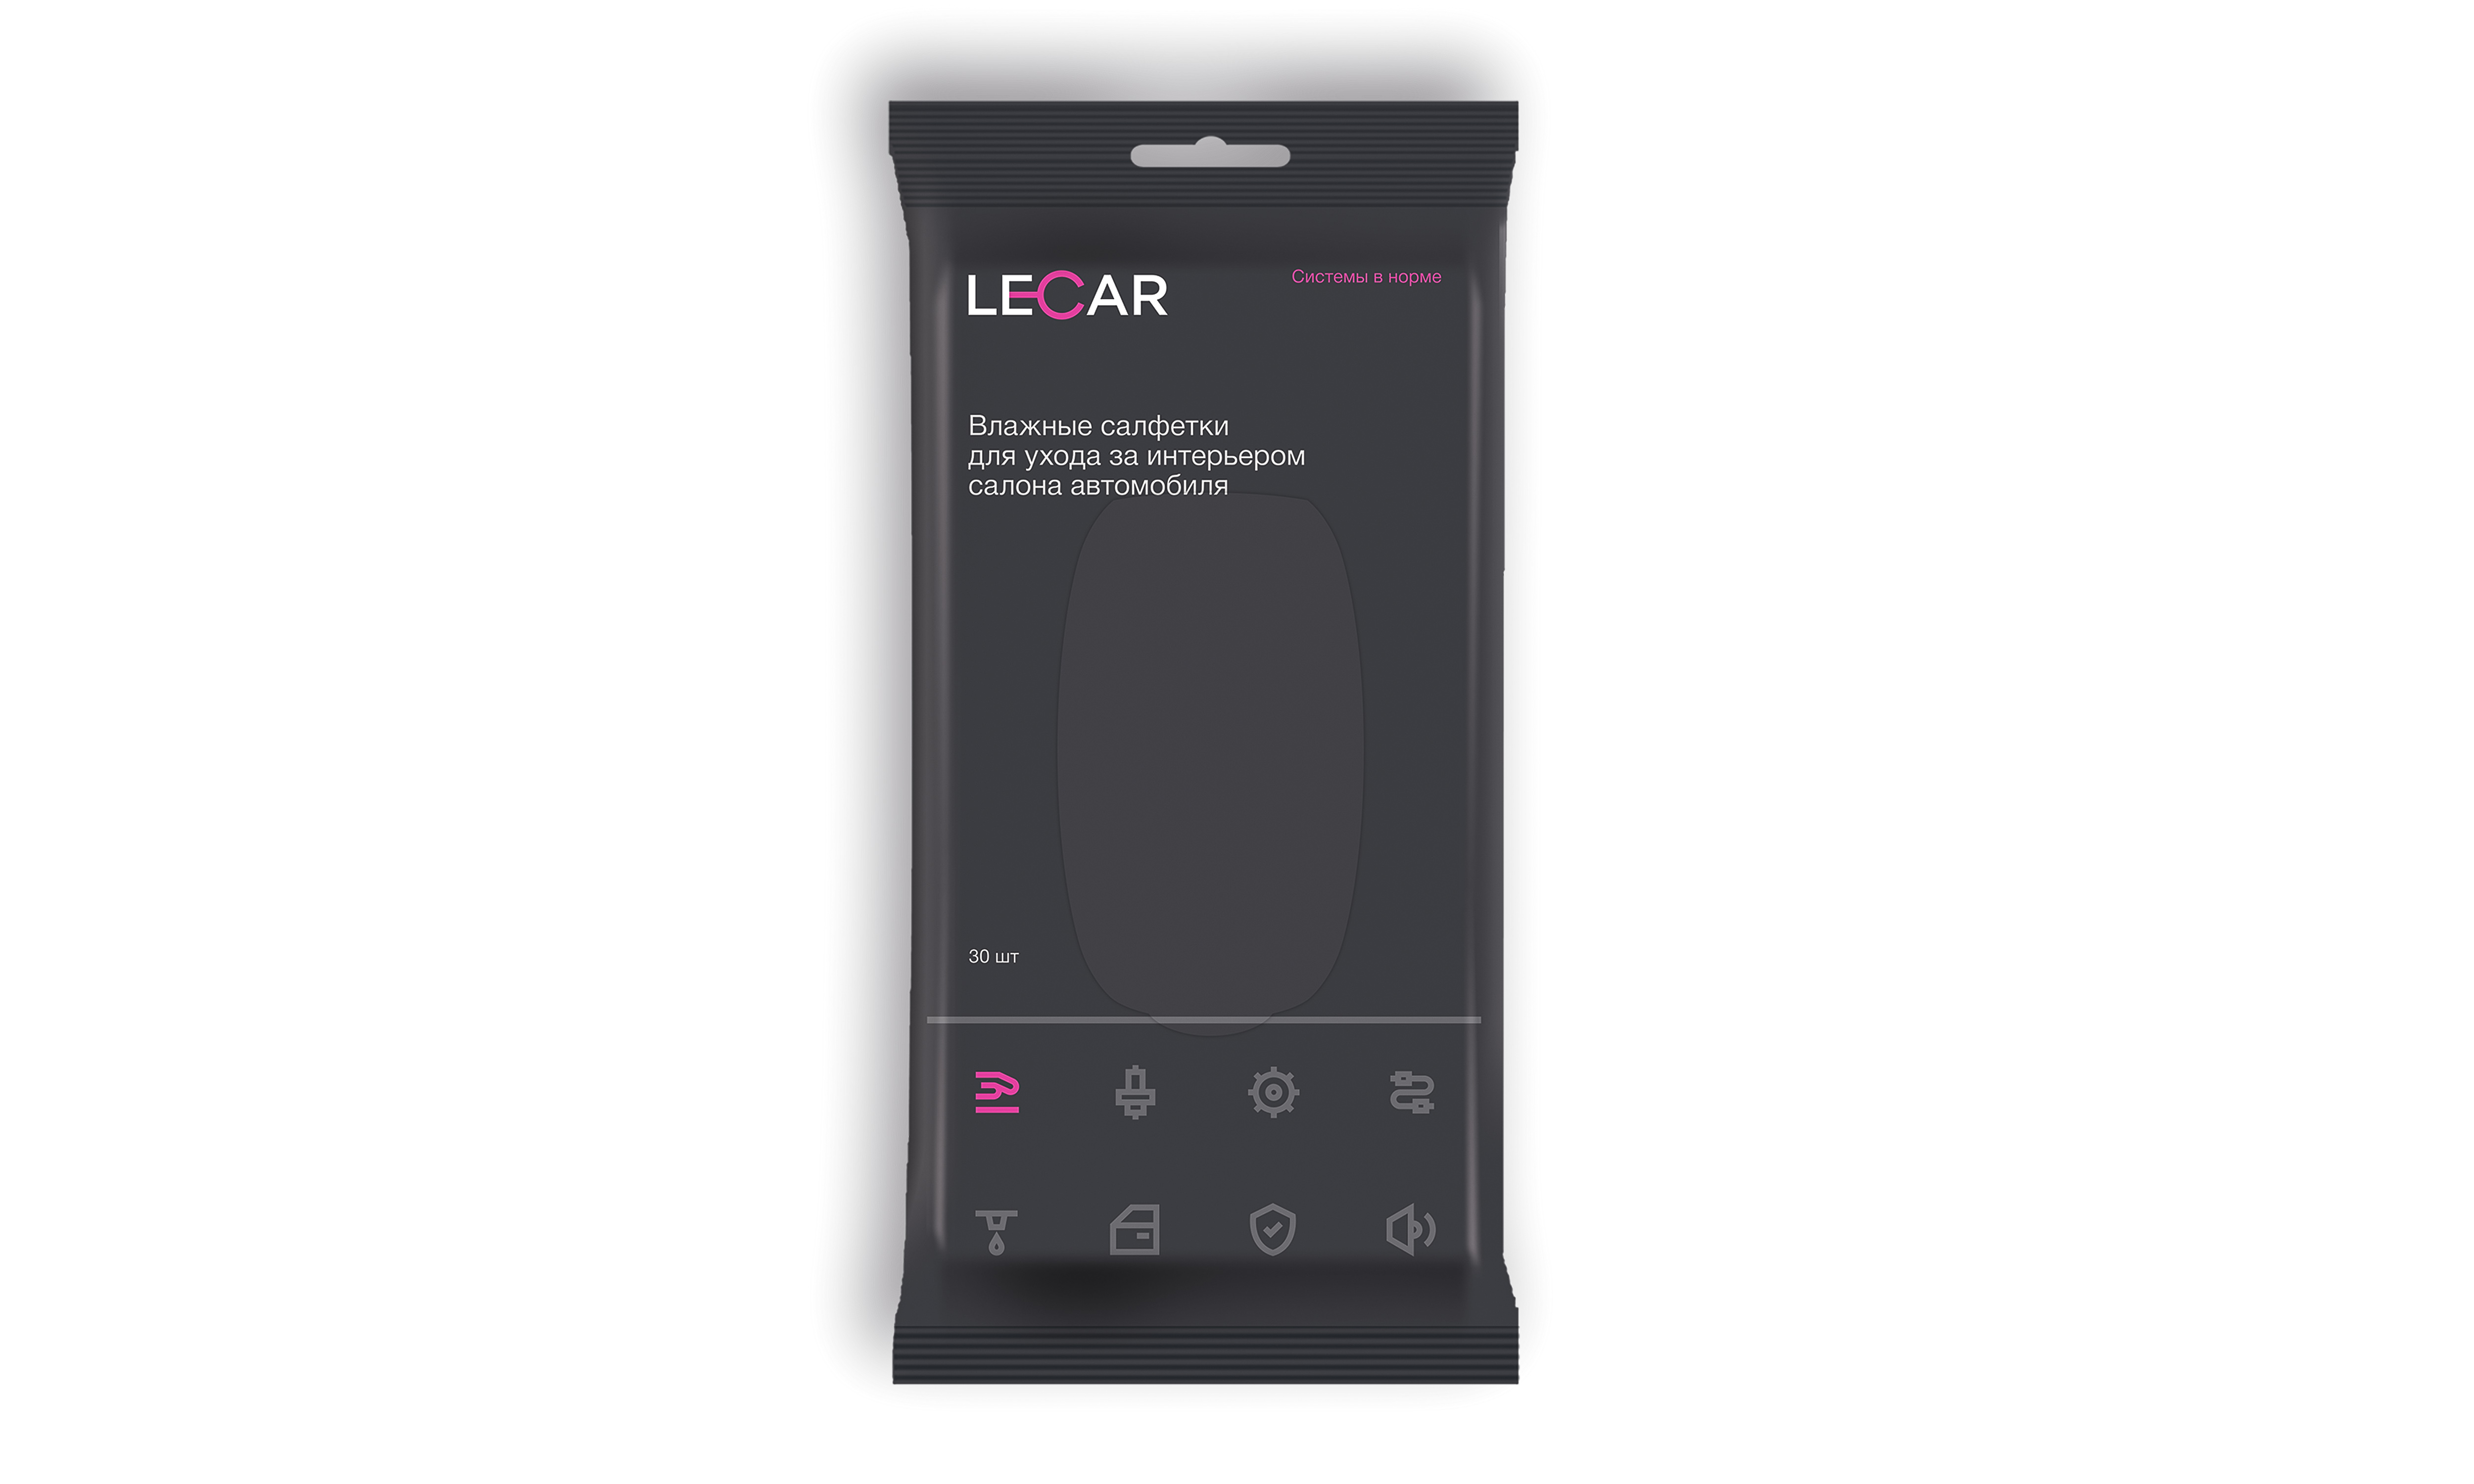 Салфетки влажные для салона (30шт) (lecar) фирм.упак lecar - LECAR LECAR000025112